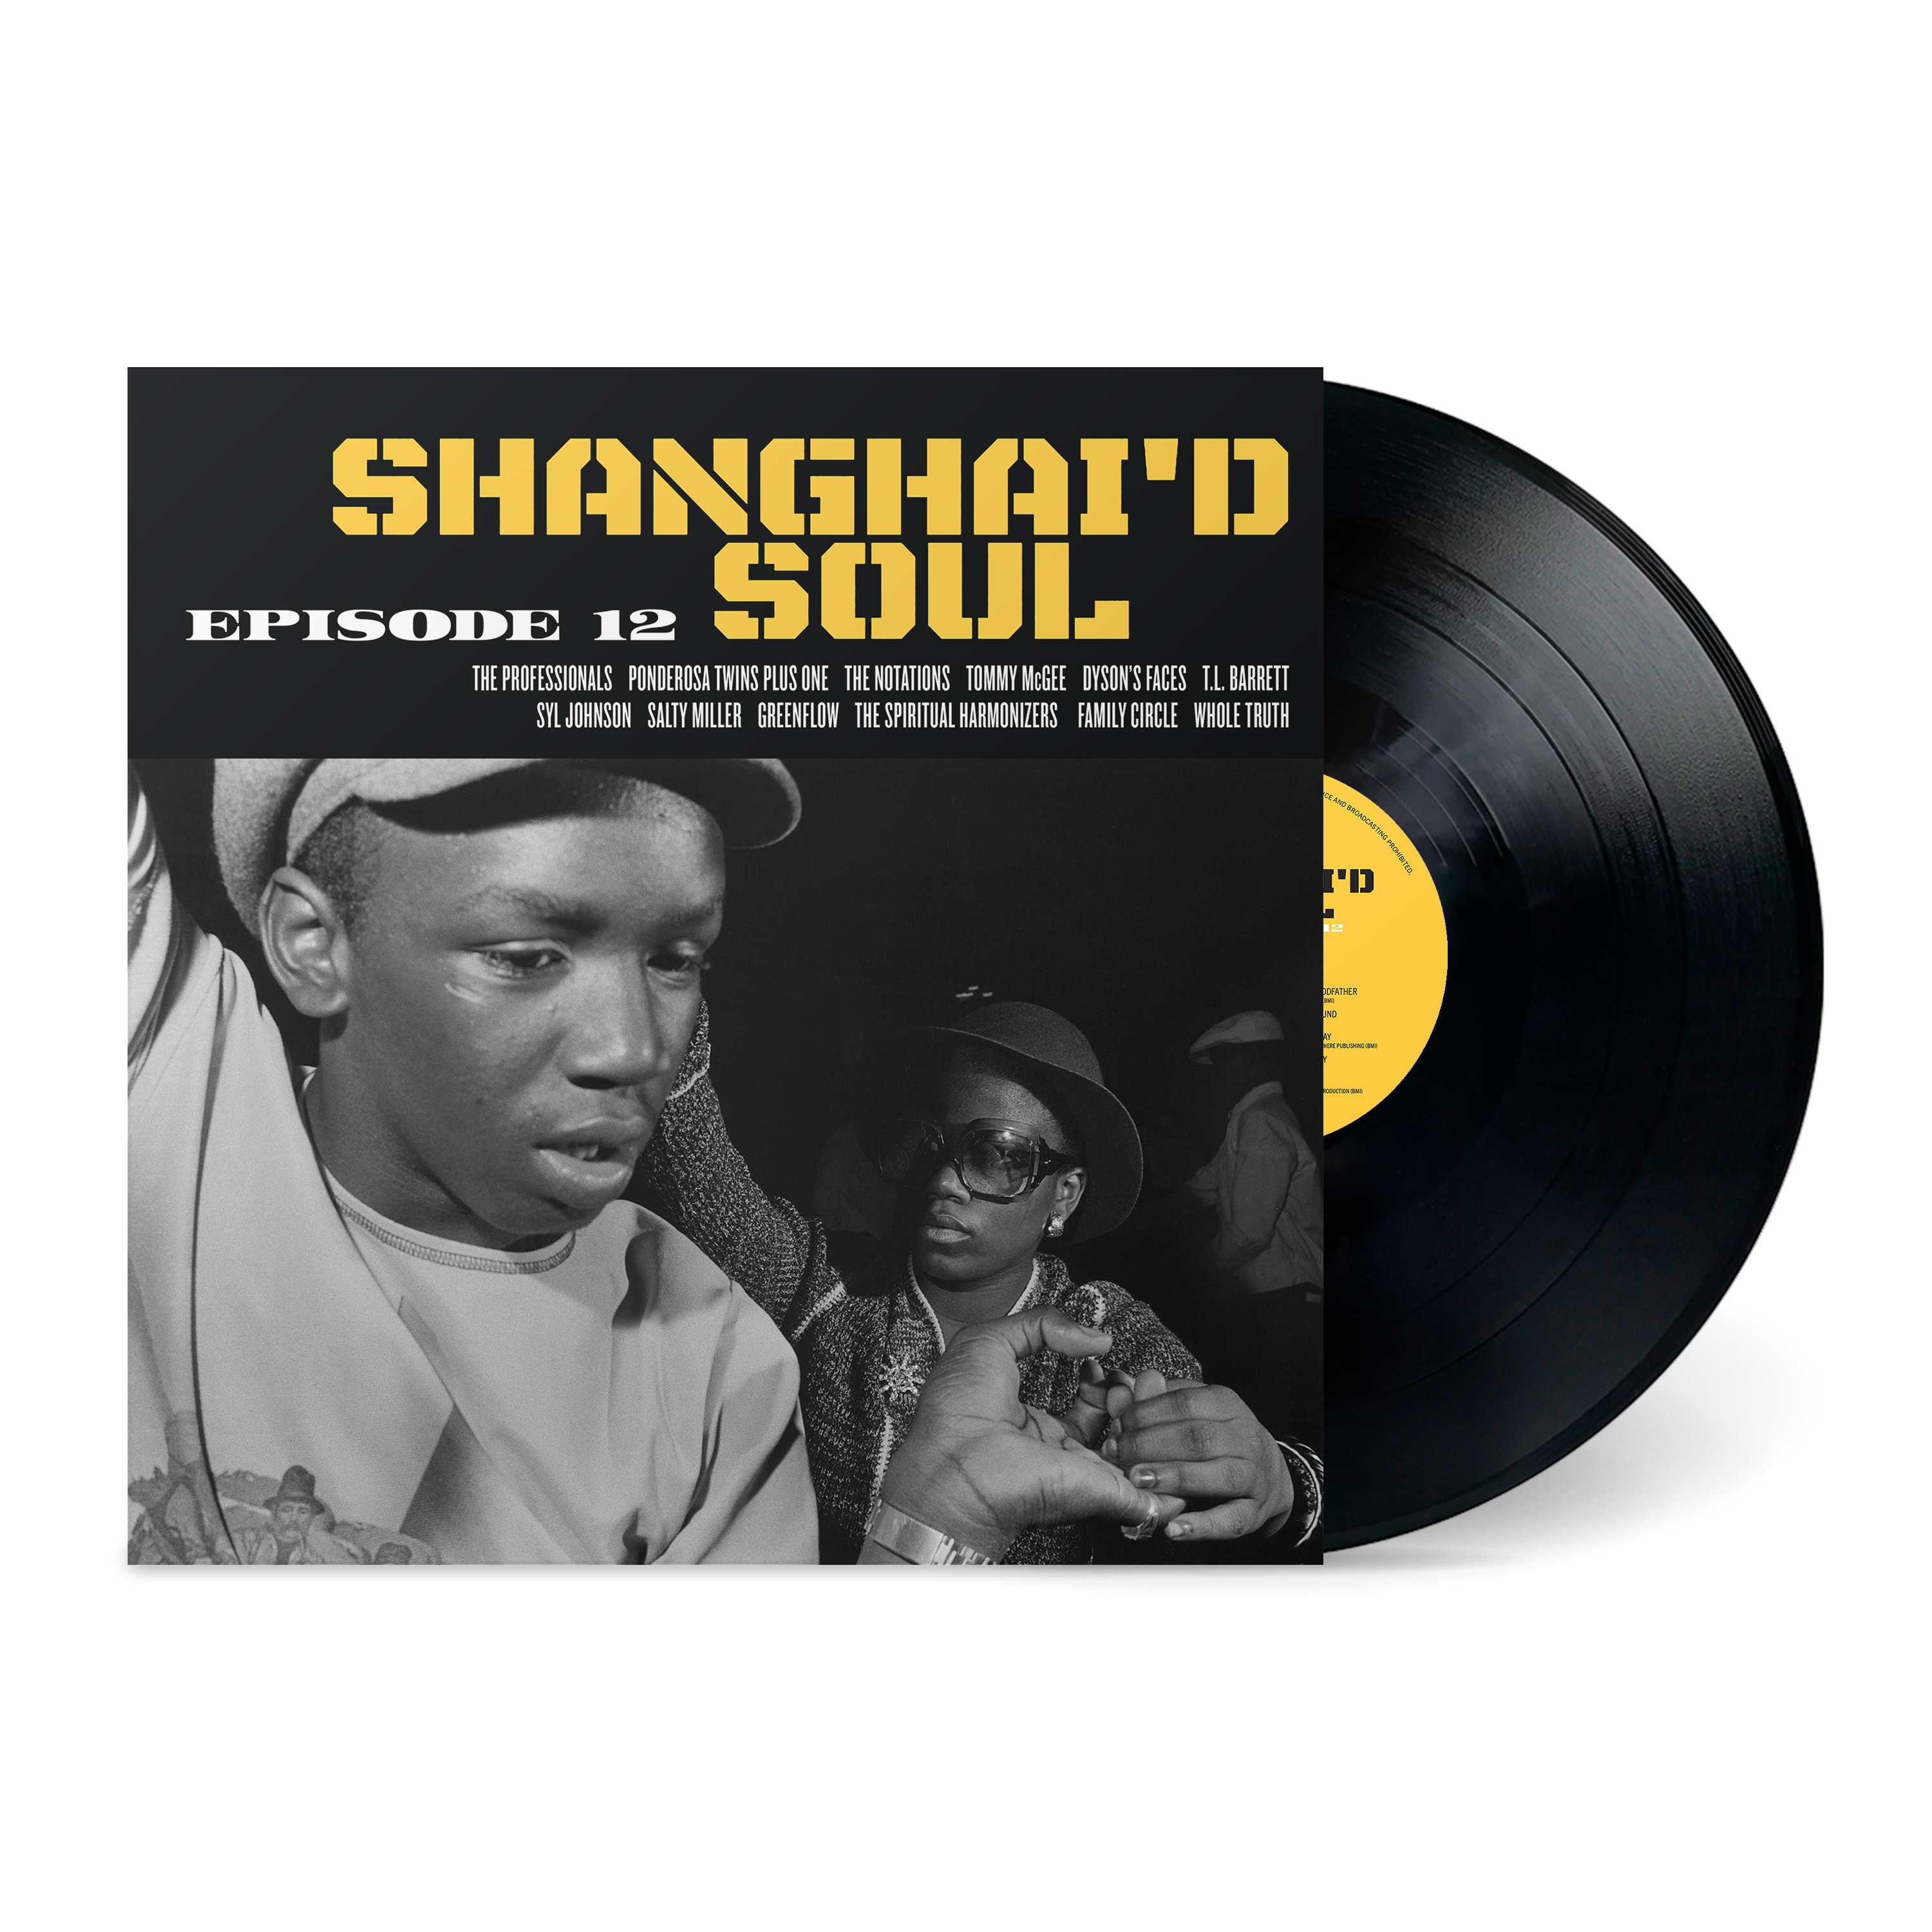 Various Artists - Shanghai'd Soul Episode 12: Vinyl LP